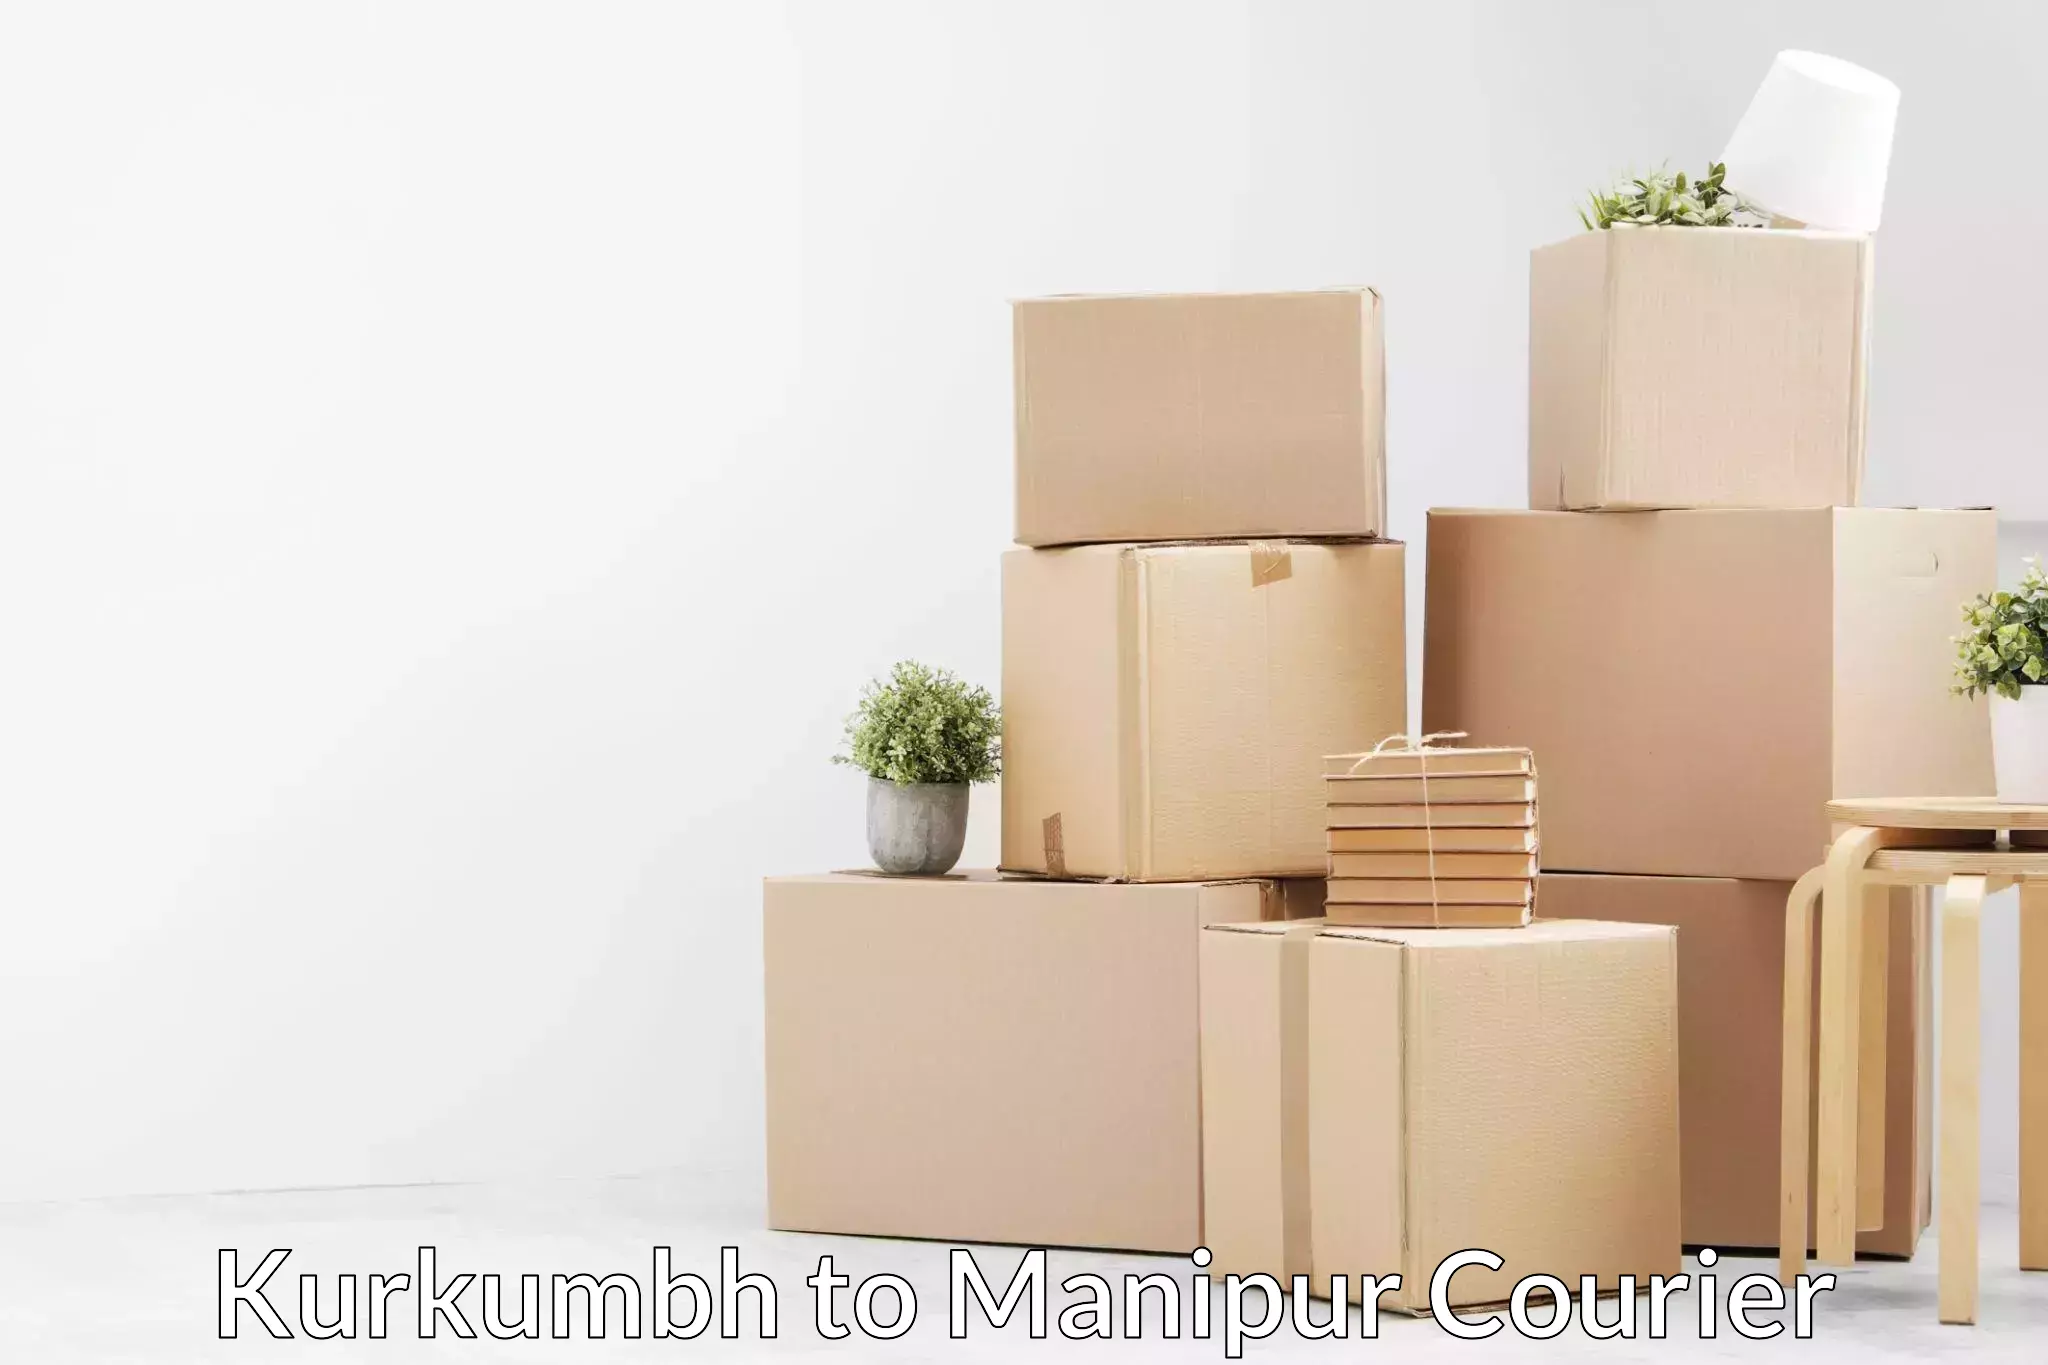 Moving and handling services Kurkumbh to Manipur